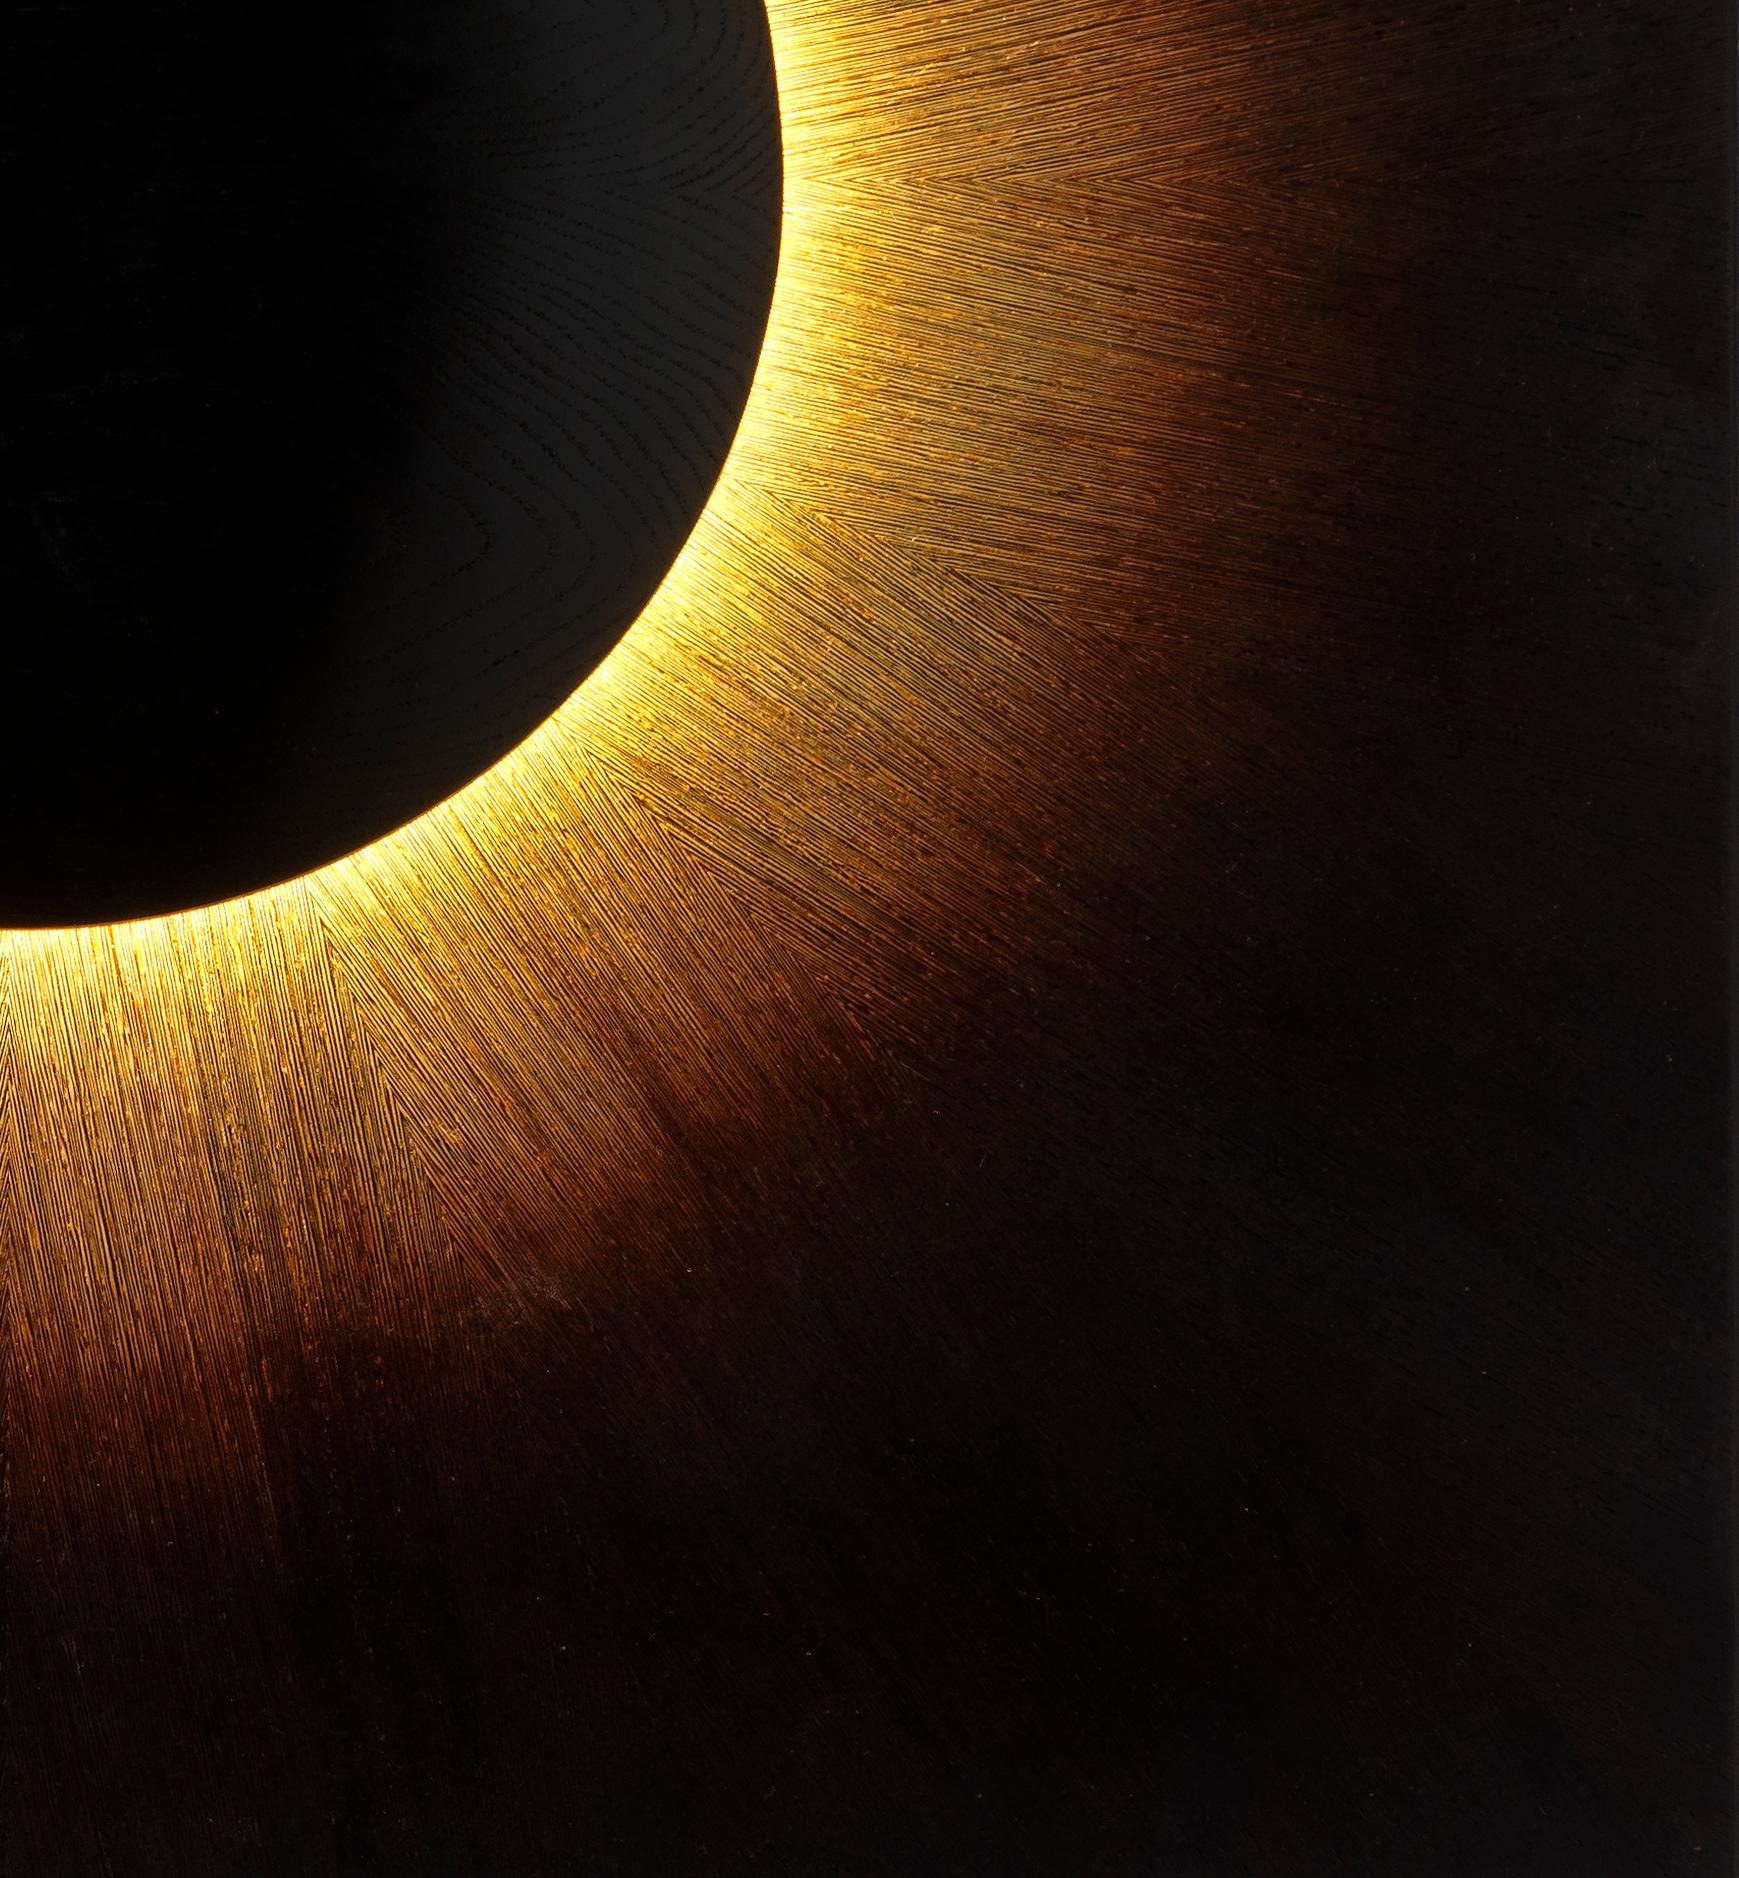 Inspiré par l'éclipse solaire de 2015, Canal capture ce moment magique où seul l'anneau incandescent du soleil peut être vu car la lune bloque la lumière directe du soleil. Cette œuvre d'art murale lumineuse de la série Celestial est conçue pour